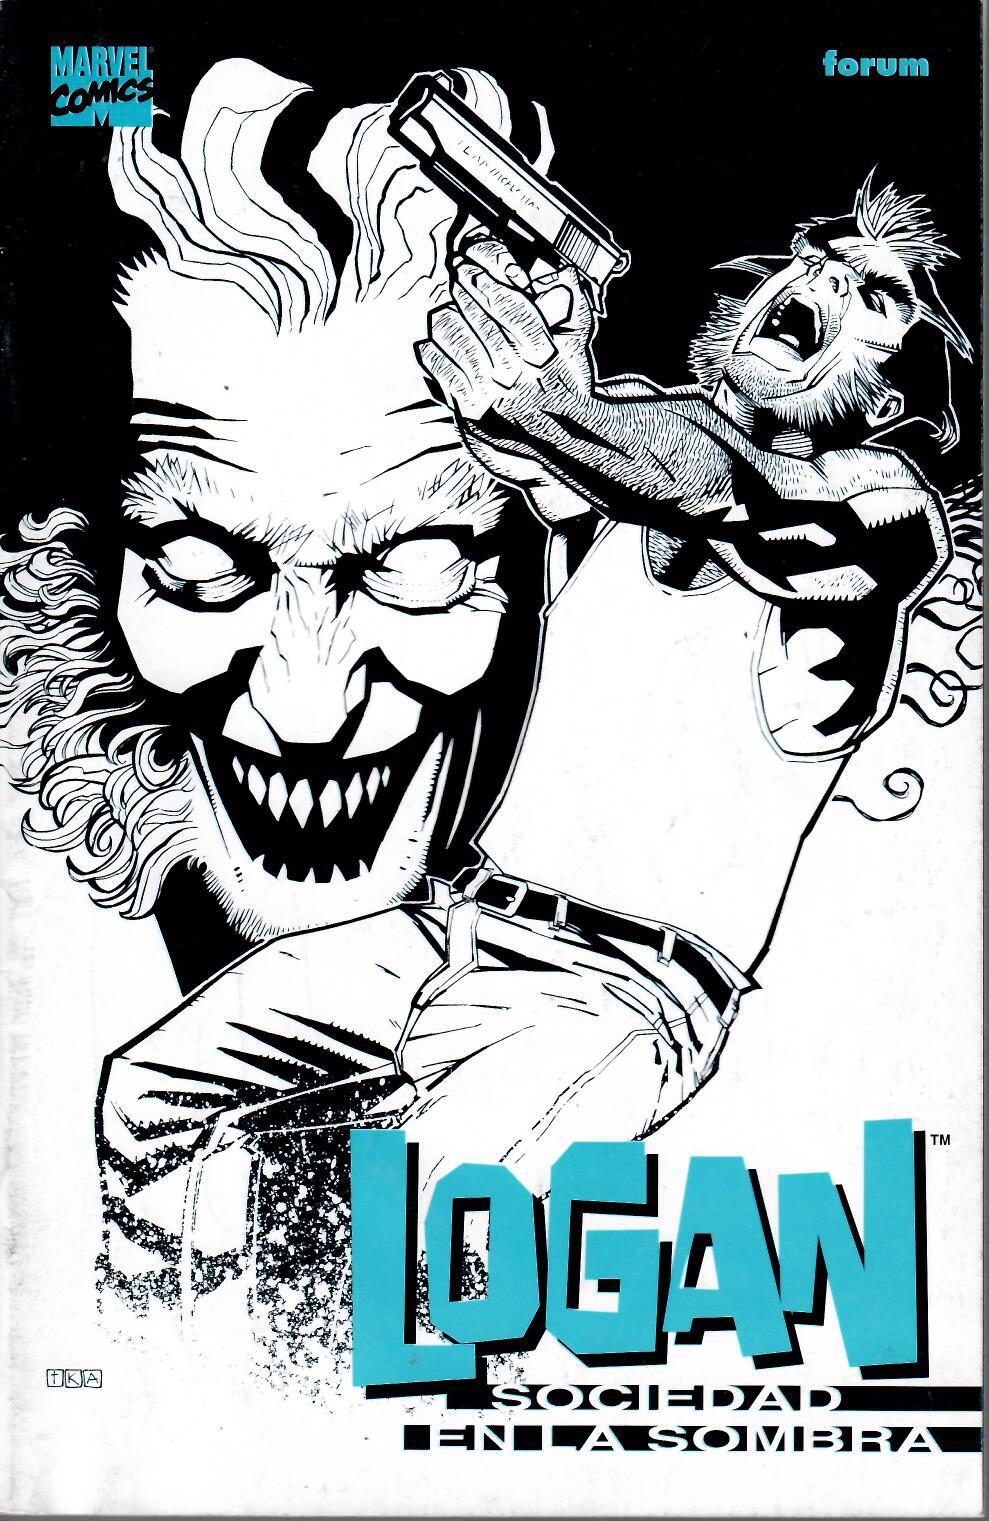 Logan: Sociedad en la sombra. Forum 1997